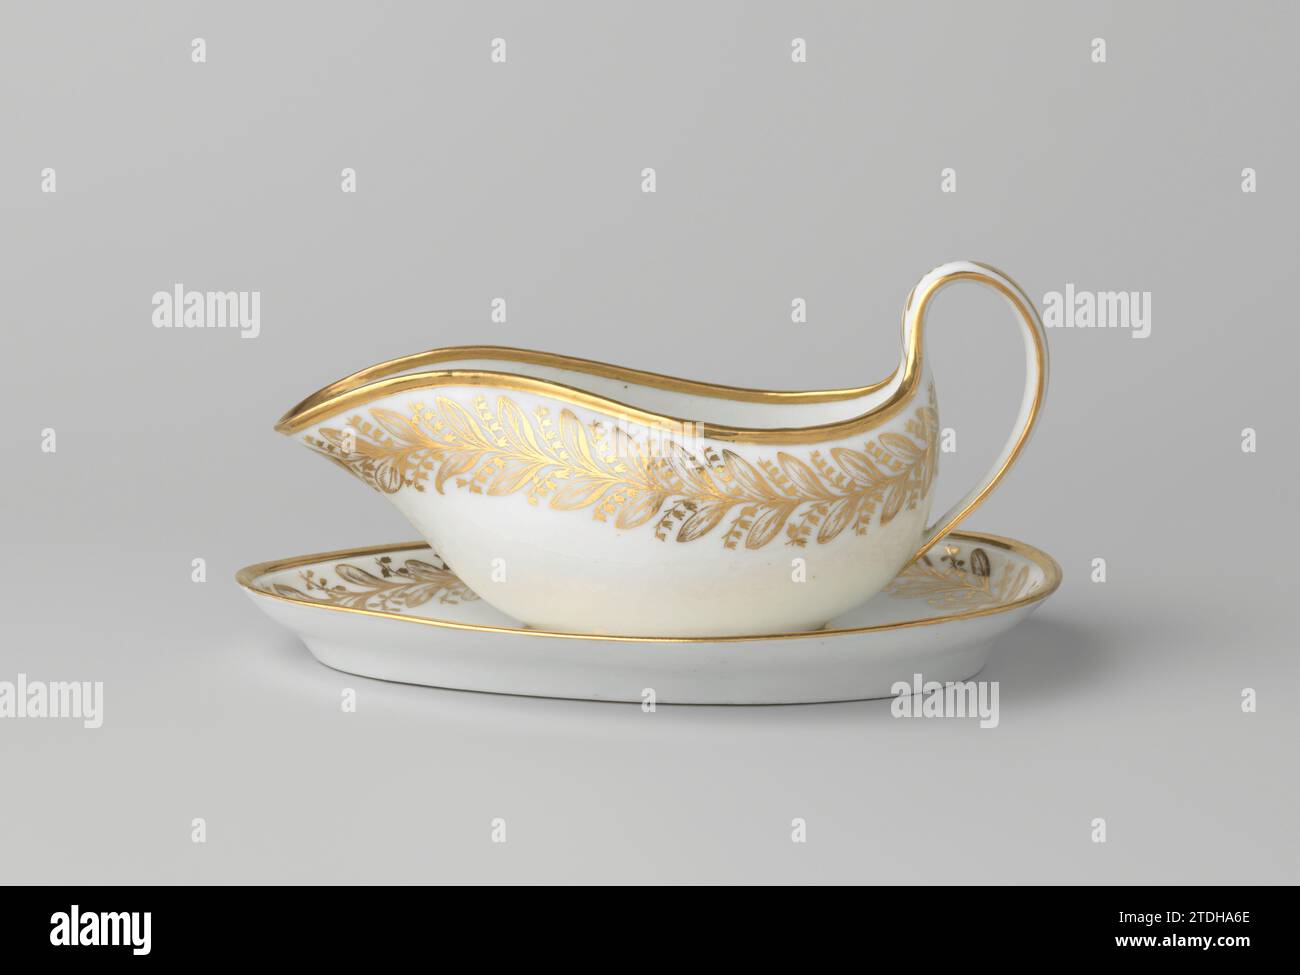 Lotto di tre piatti moderni in ceramica, un vaso e una lampada